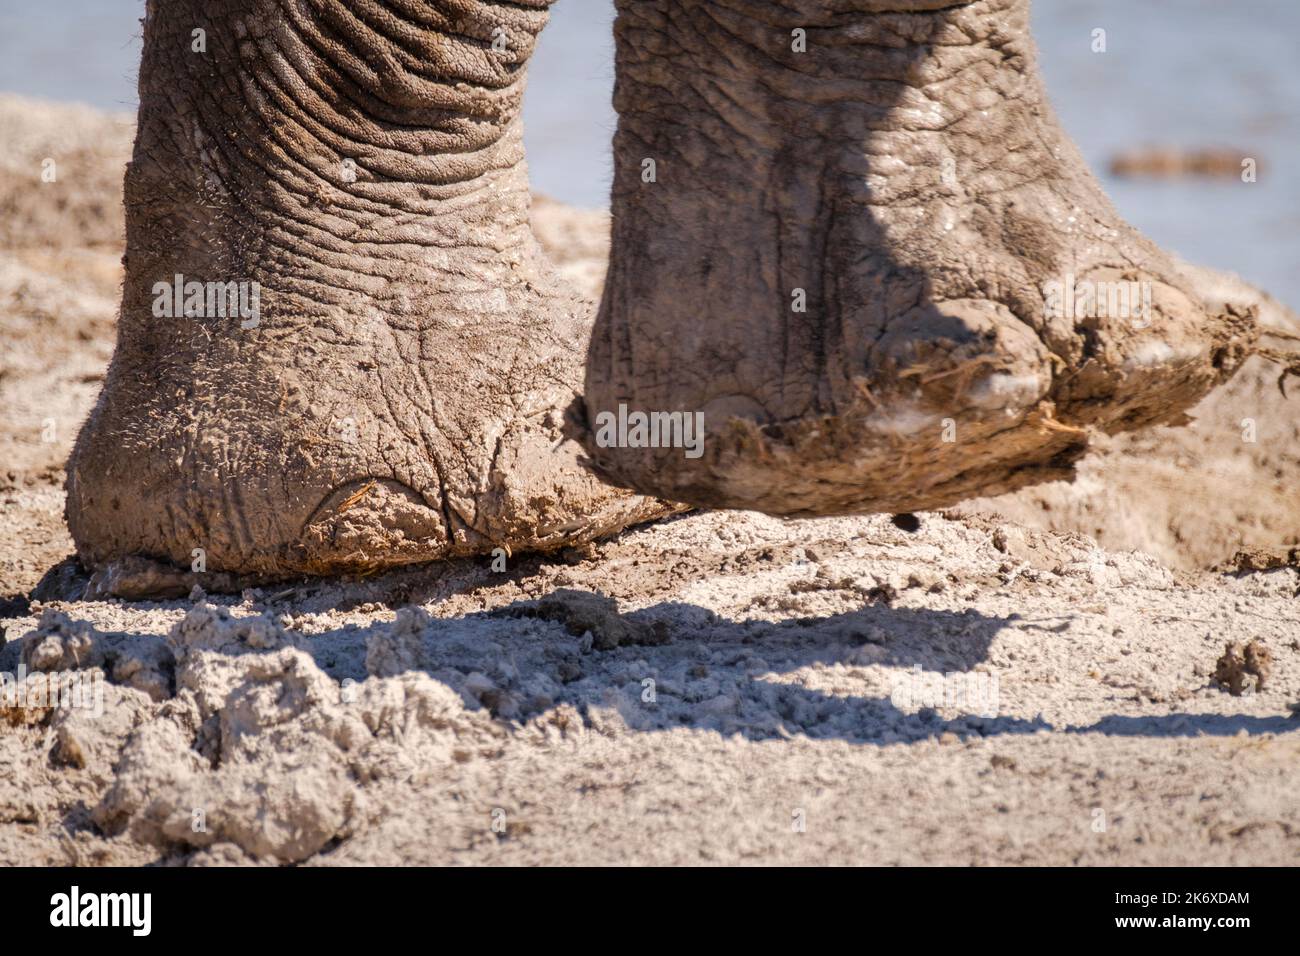 Gros plan des pieds d'éléphant (Loxodonta africana), avec orteils, semelles et grande jambe. Nxai Pan, Botswana, Afrique Banque D'Images